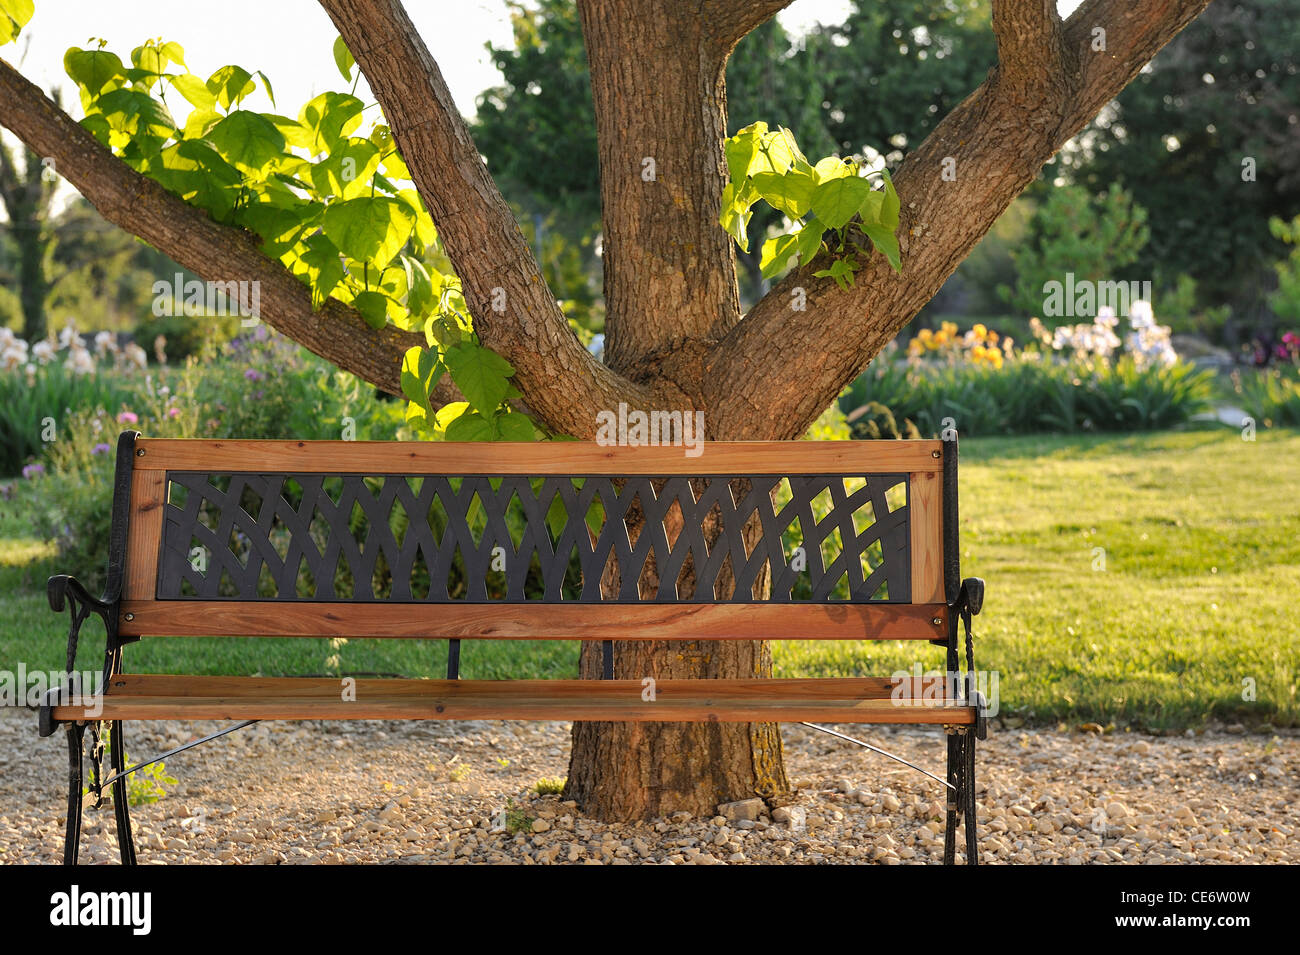 Banc en bois dans un jardin sous un arbre, Provence, France Banque D'Images